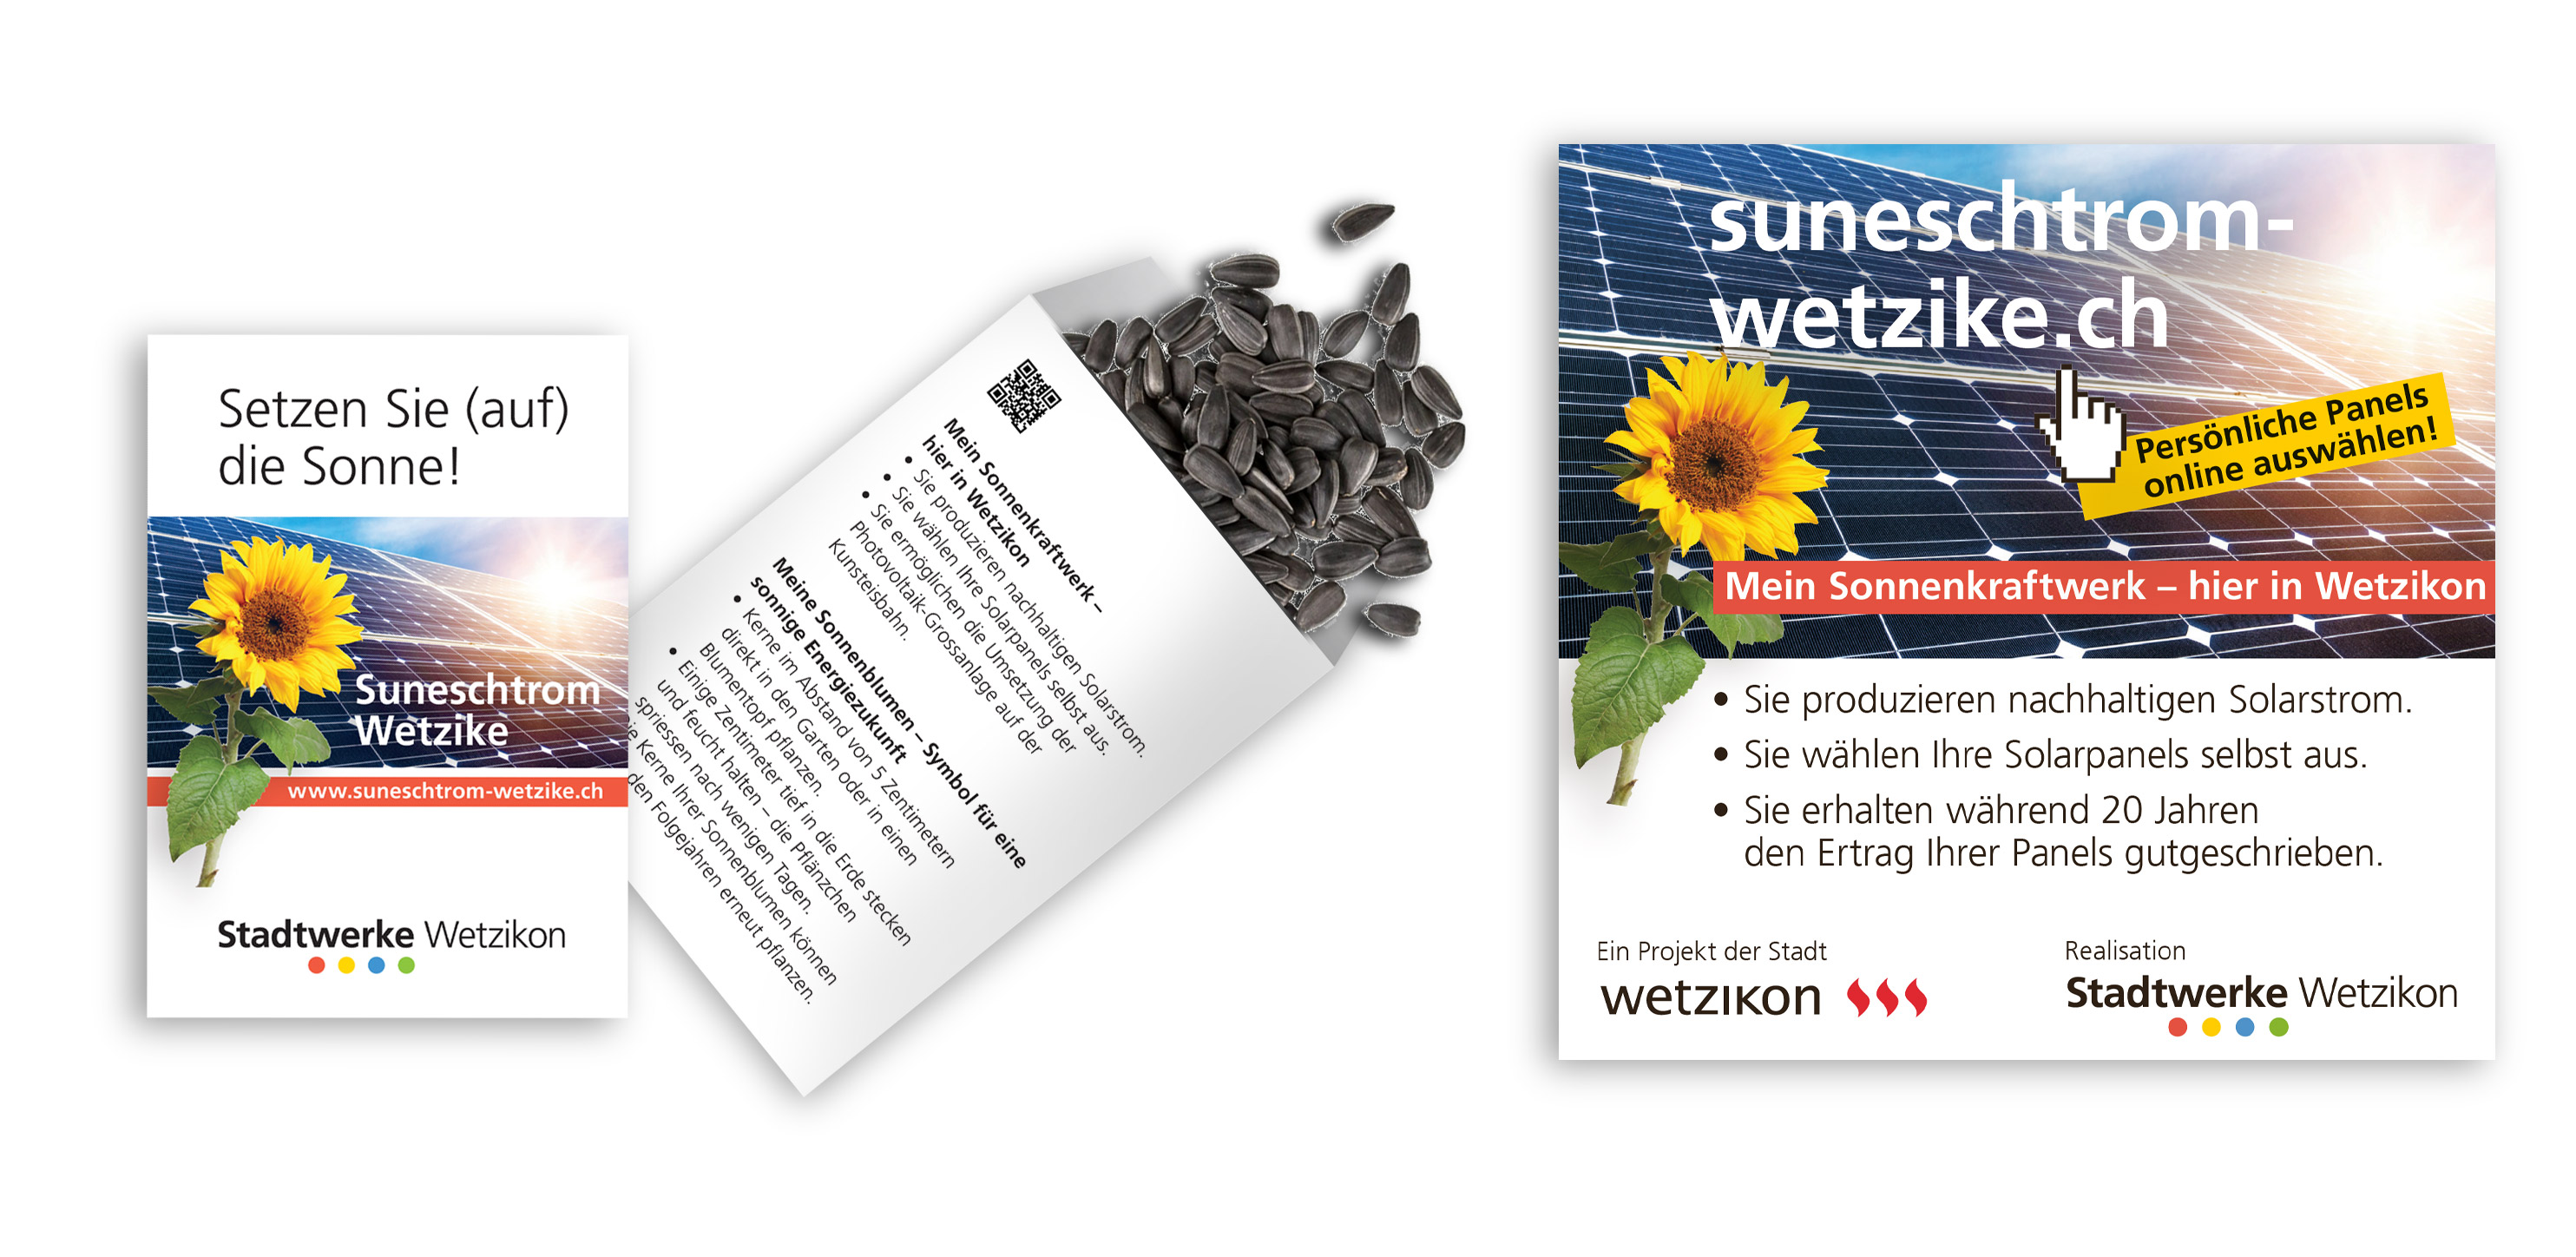 Kampagne «Suneschtrom Wetzike», Stadtwerke Wetzikon - Atelier Leuthold, Visuelle Kommunikation, Grafik Design, Zürich